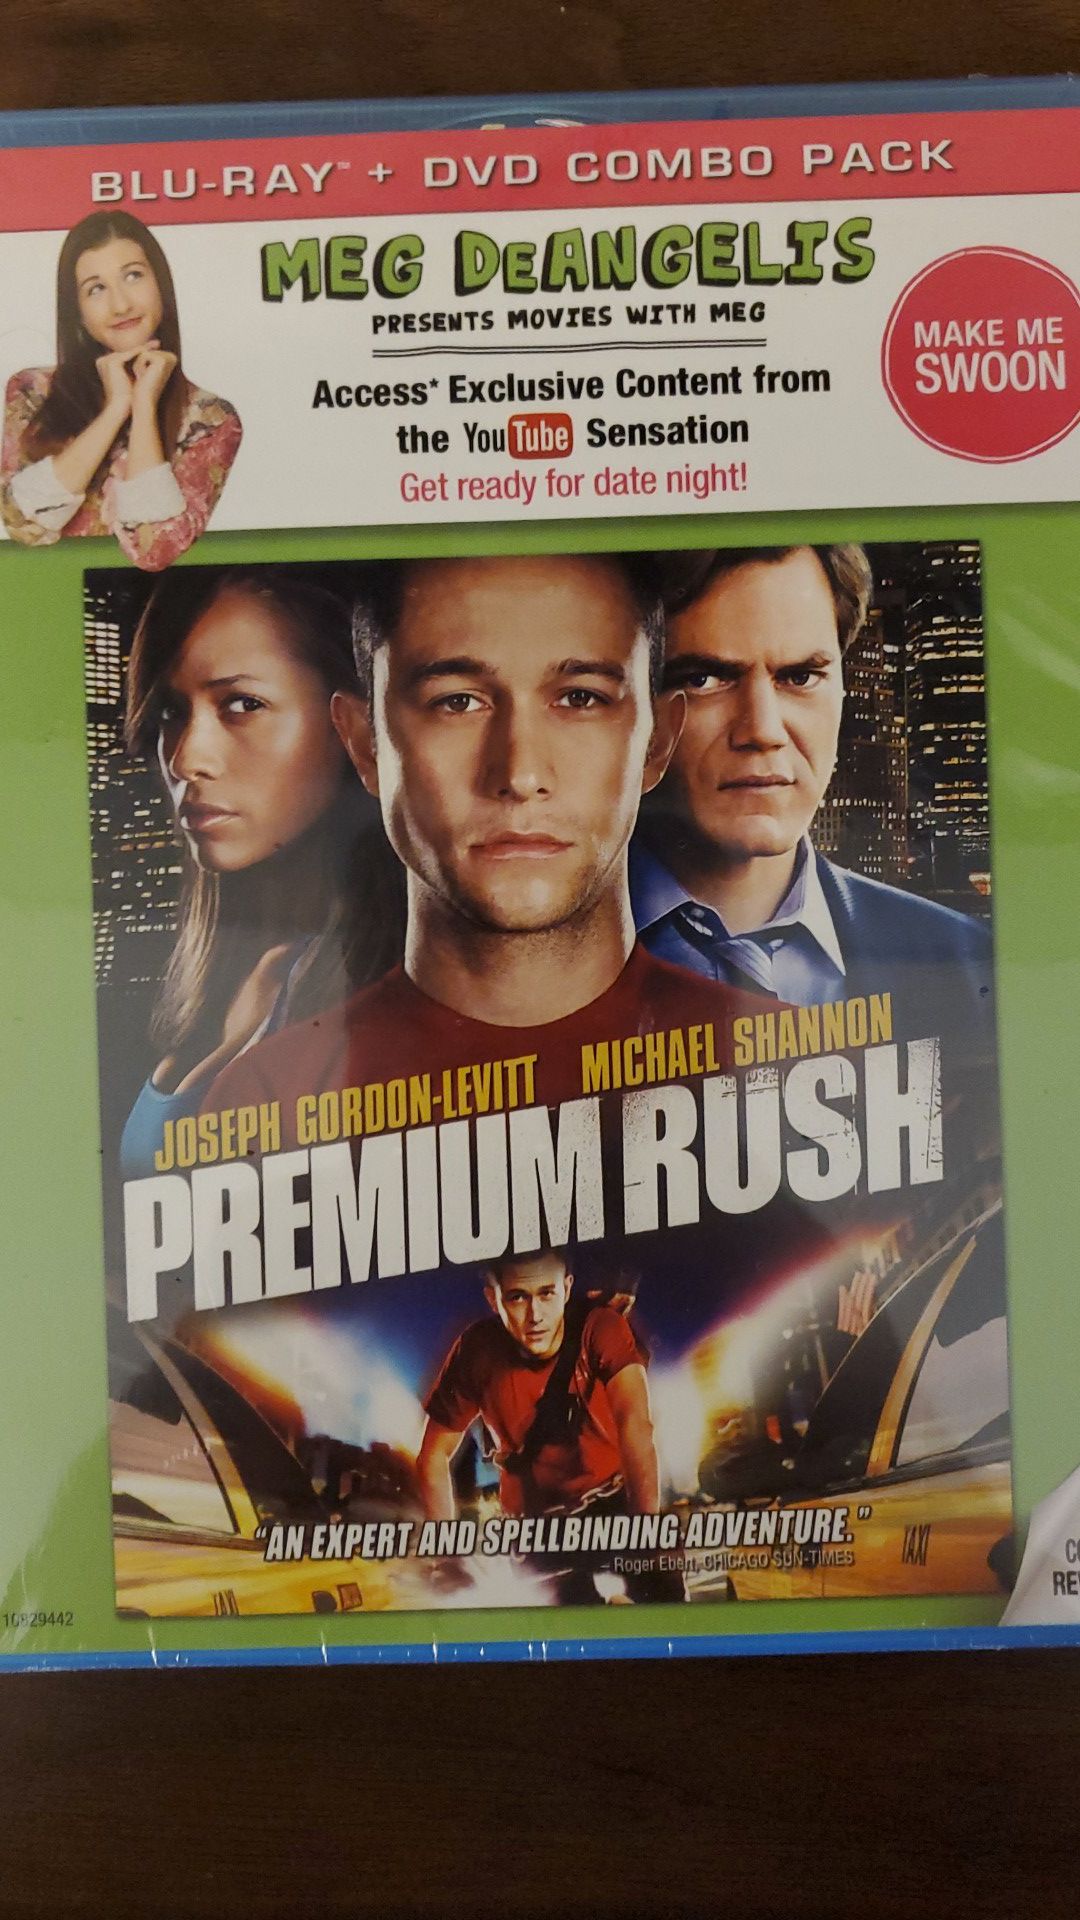 Premium rush Blu-Ray + DVD brand new in factory seal